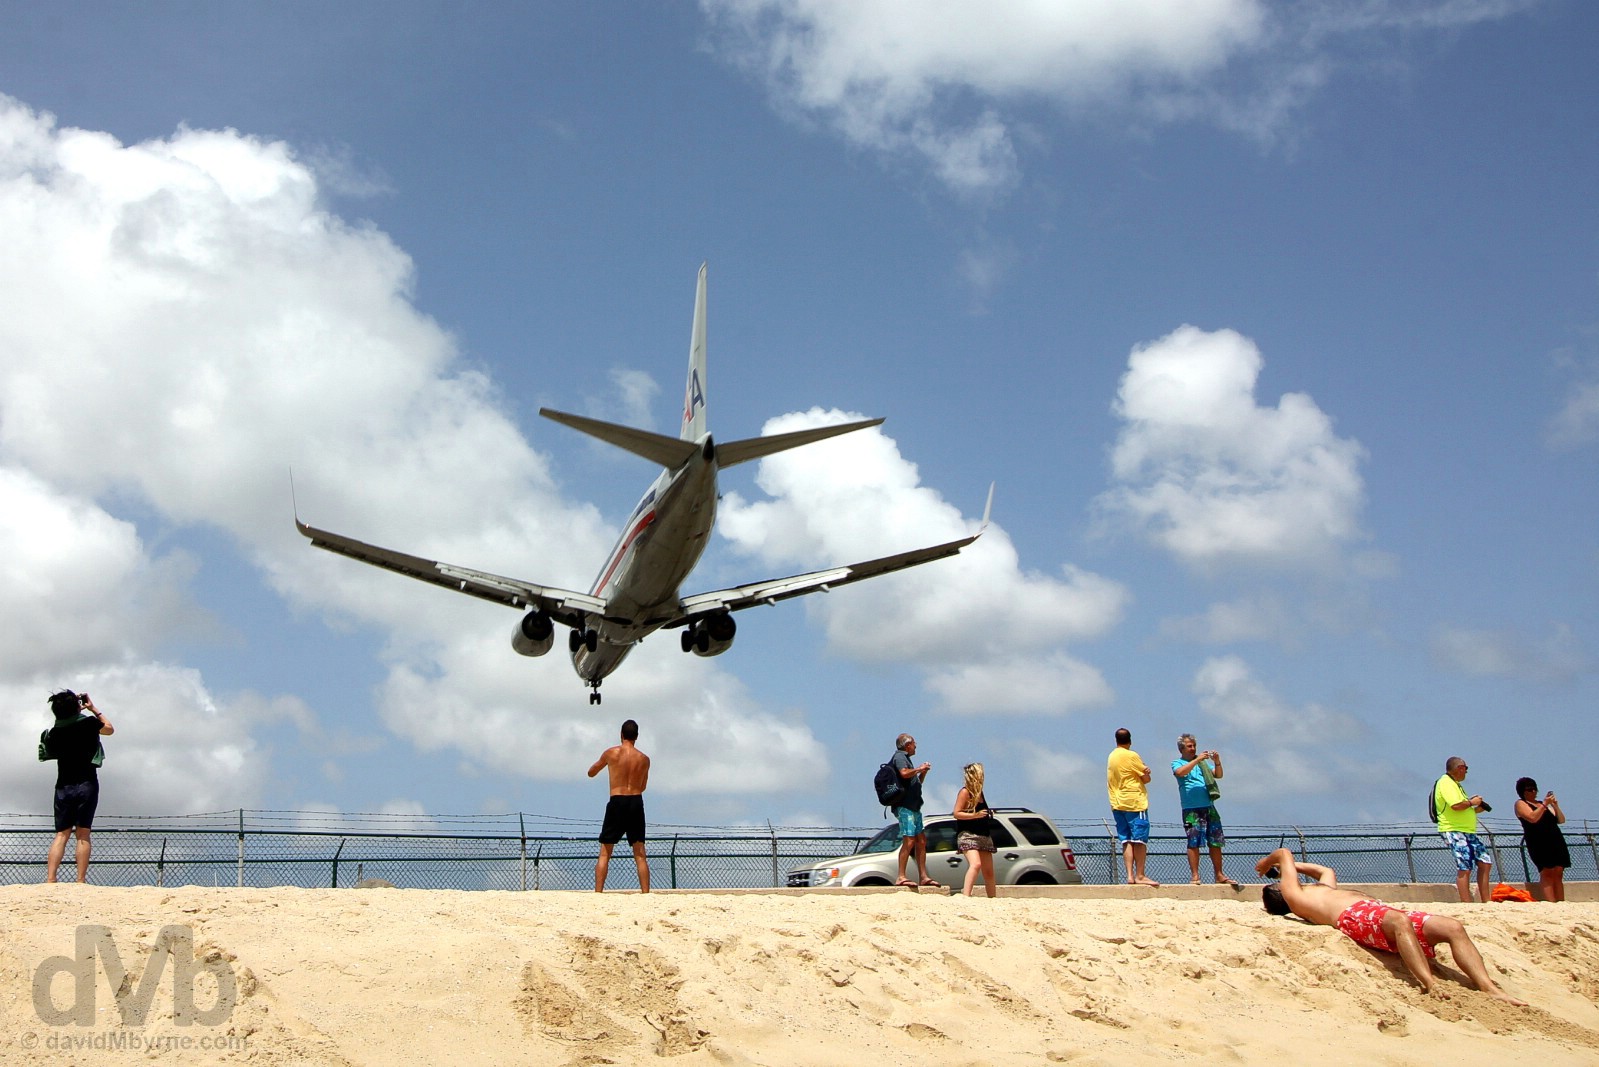 An approach to Juliana Airport over the sands of Maho Beach, Sint Maarten, Lesser Antilles. June 8, 2015.